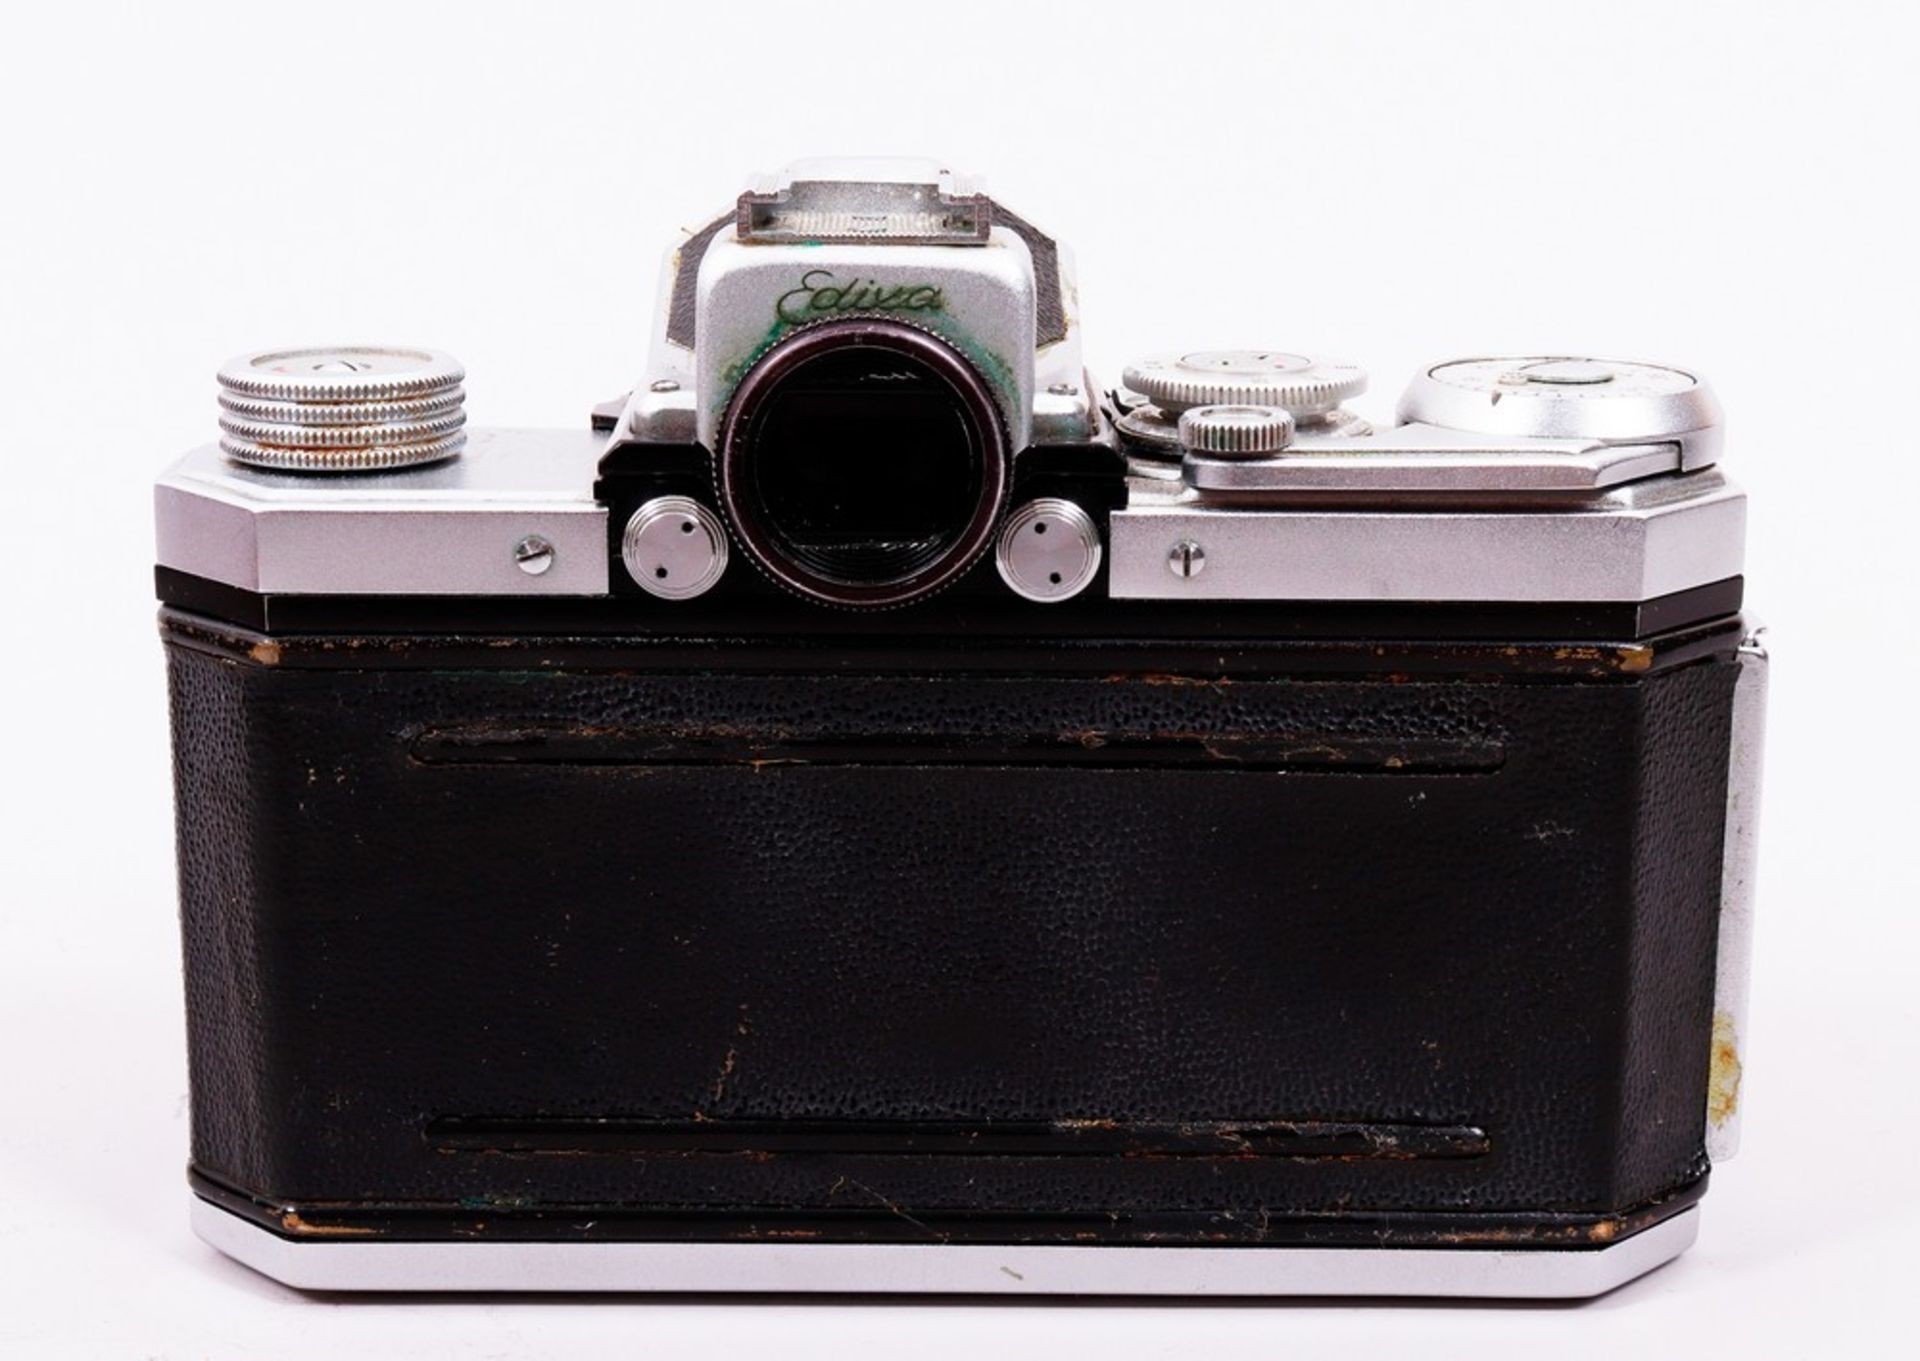 Kamera "Edixa Reflex", Hersteller Wirgin, um 1960 - Bild 4 aus 7